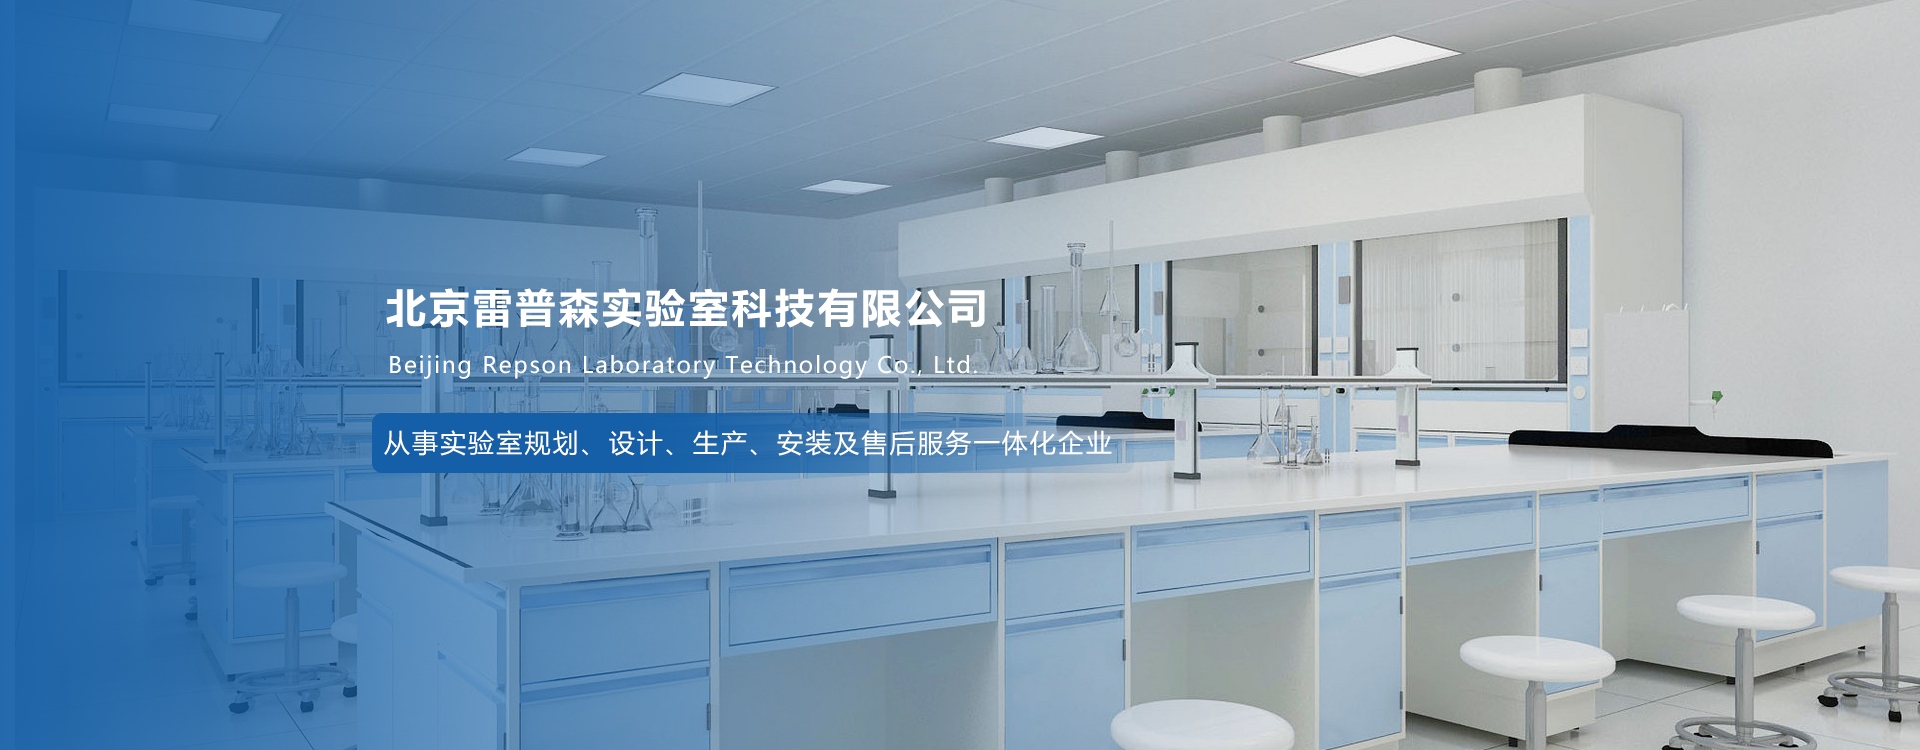 北京雷普森實驗室科技有限公司與我司簽訂網站建設協議